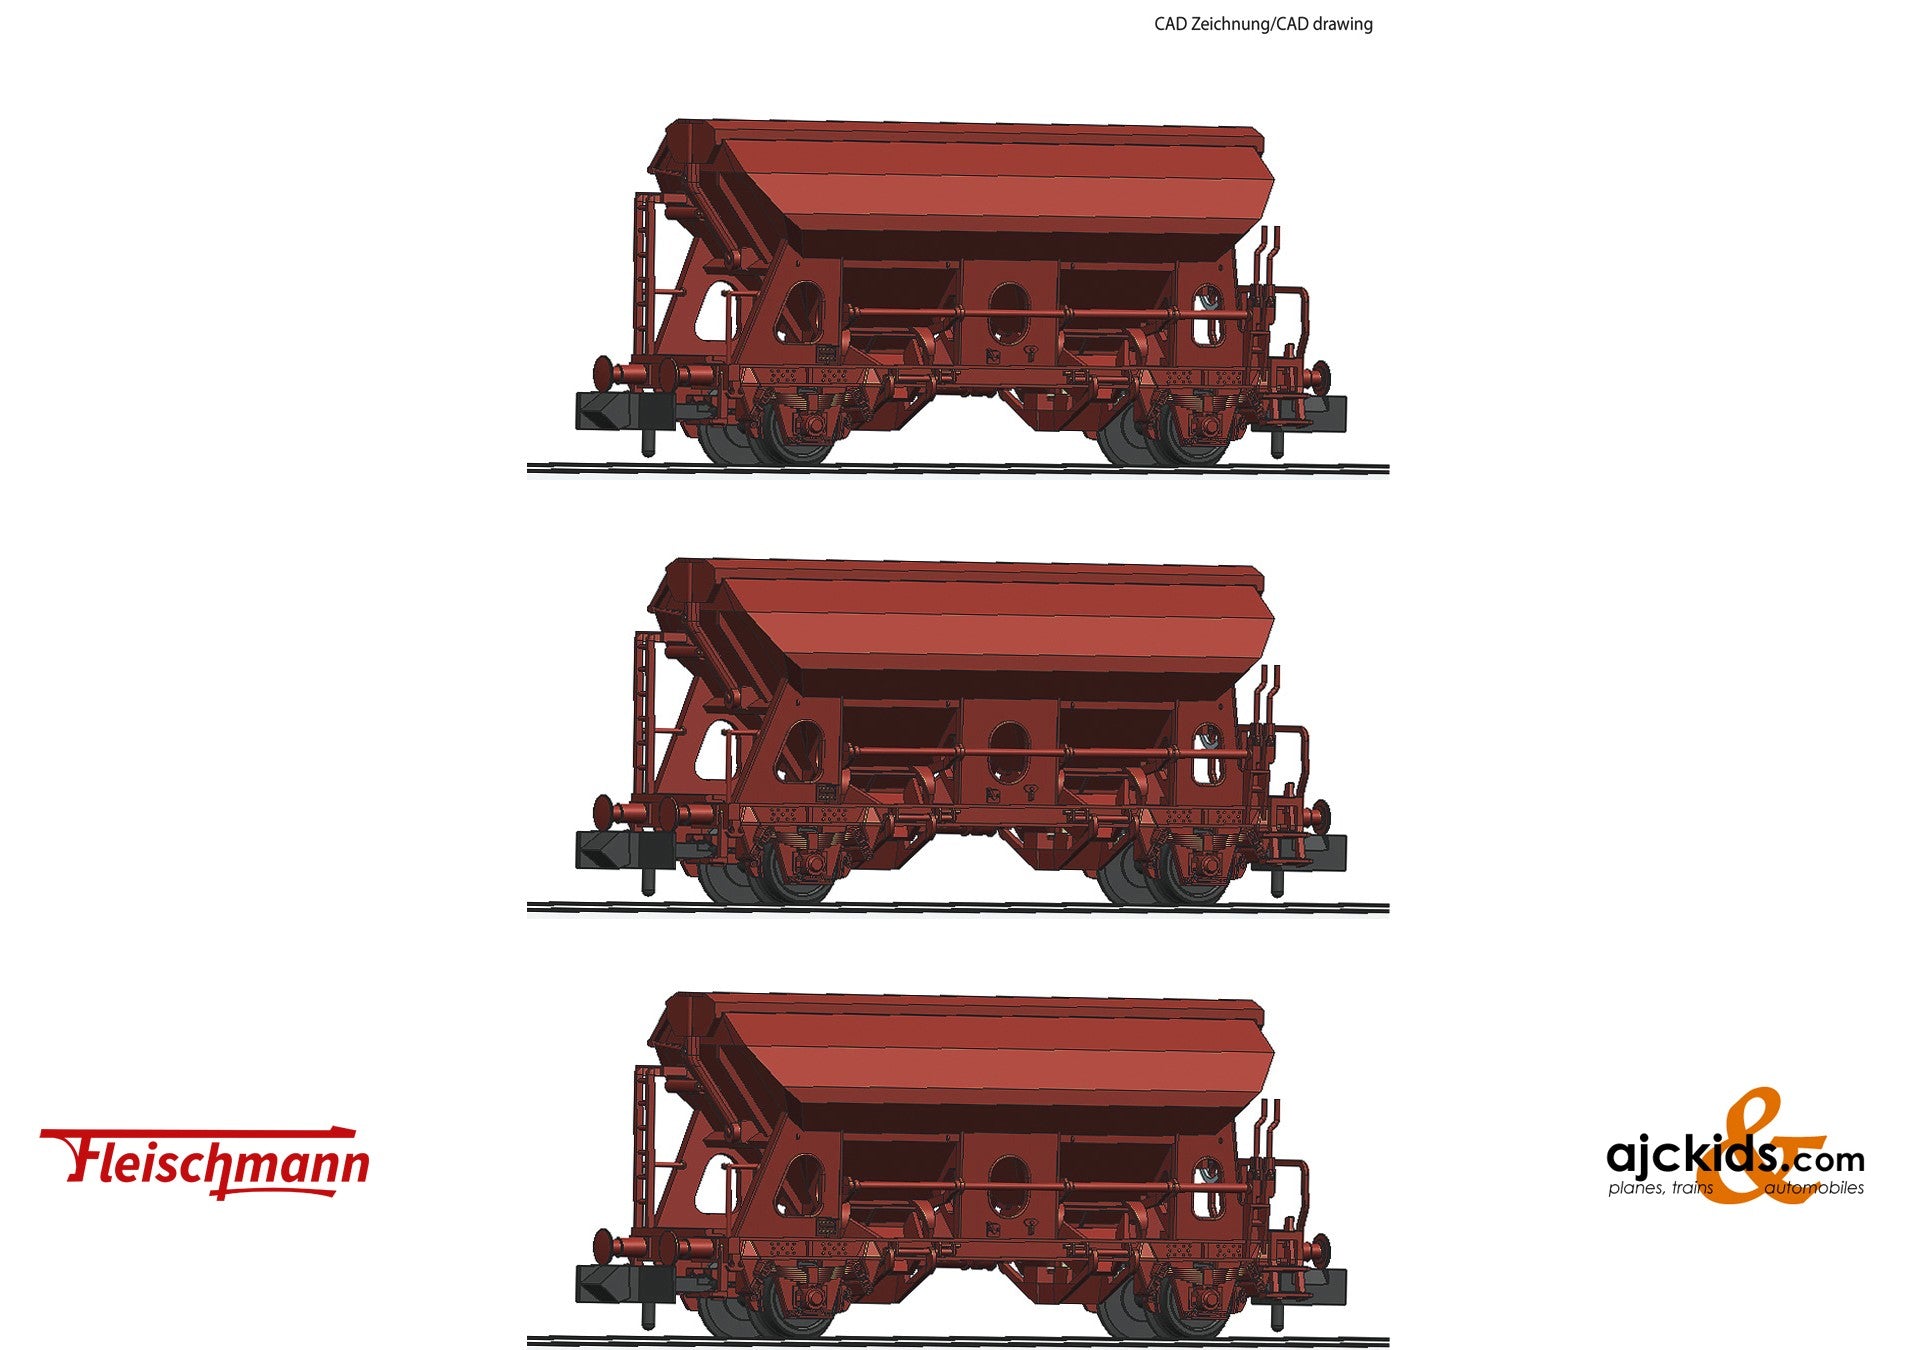 Fleischmann 830351 -3 piece set: Swing roof wagons, DB